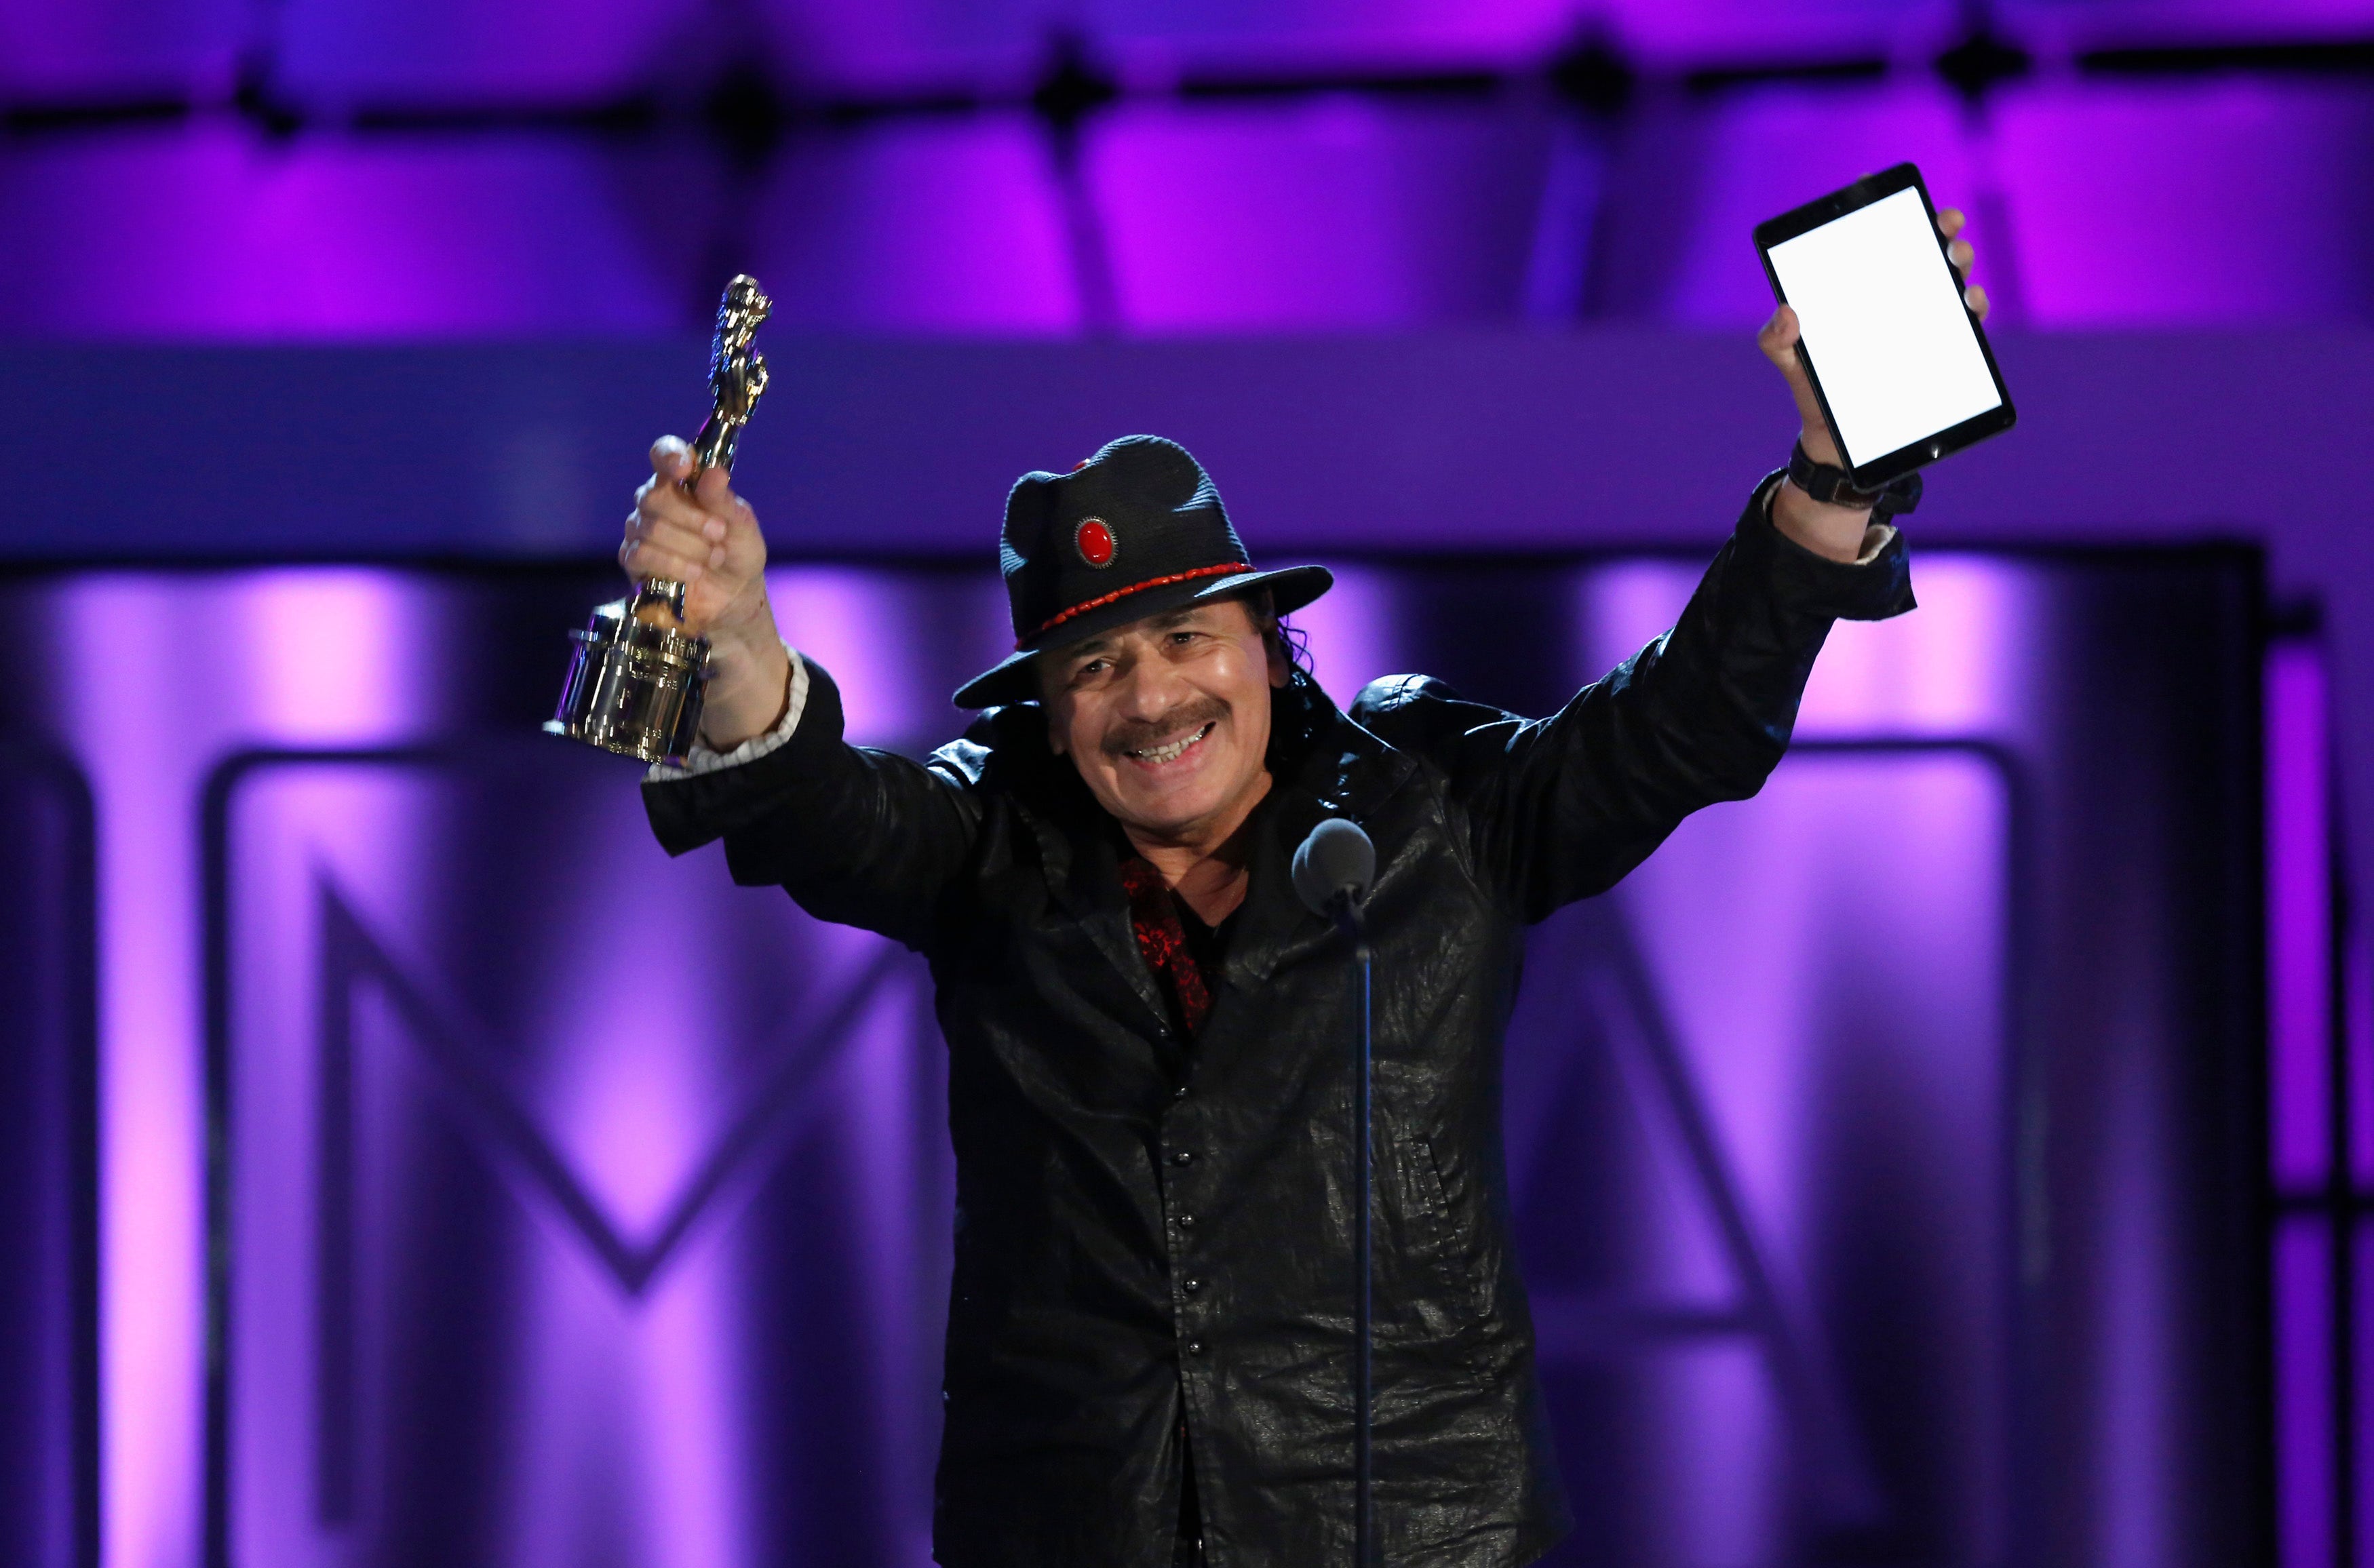 Carlos Santana's wife files for divorce - report